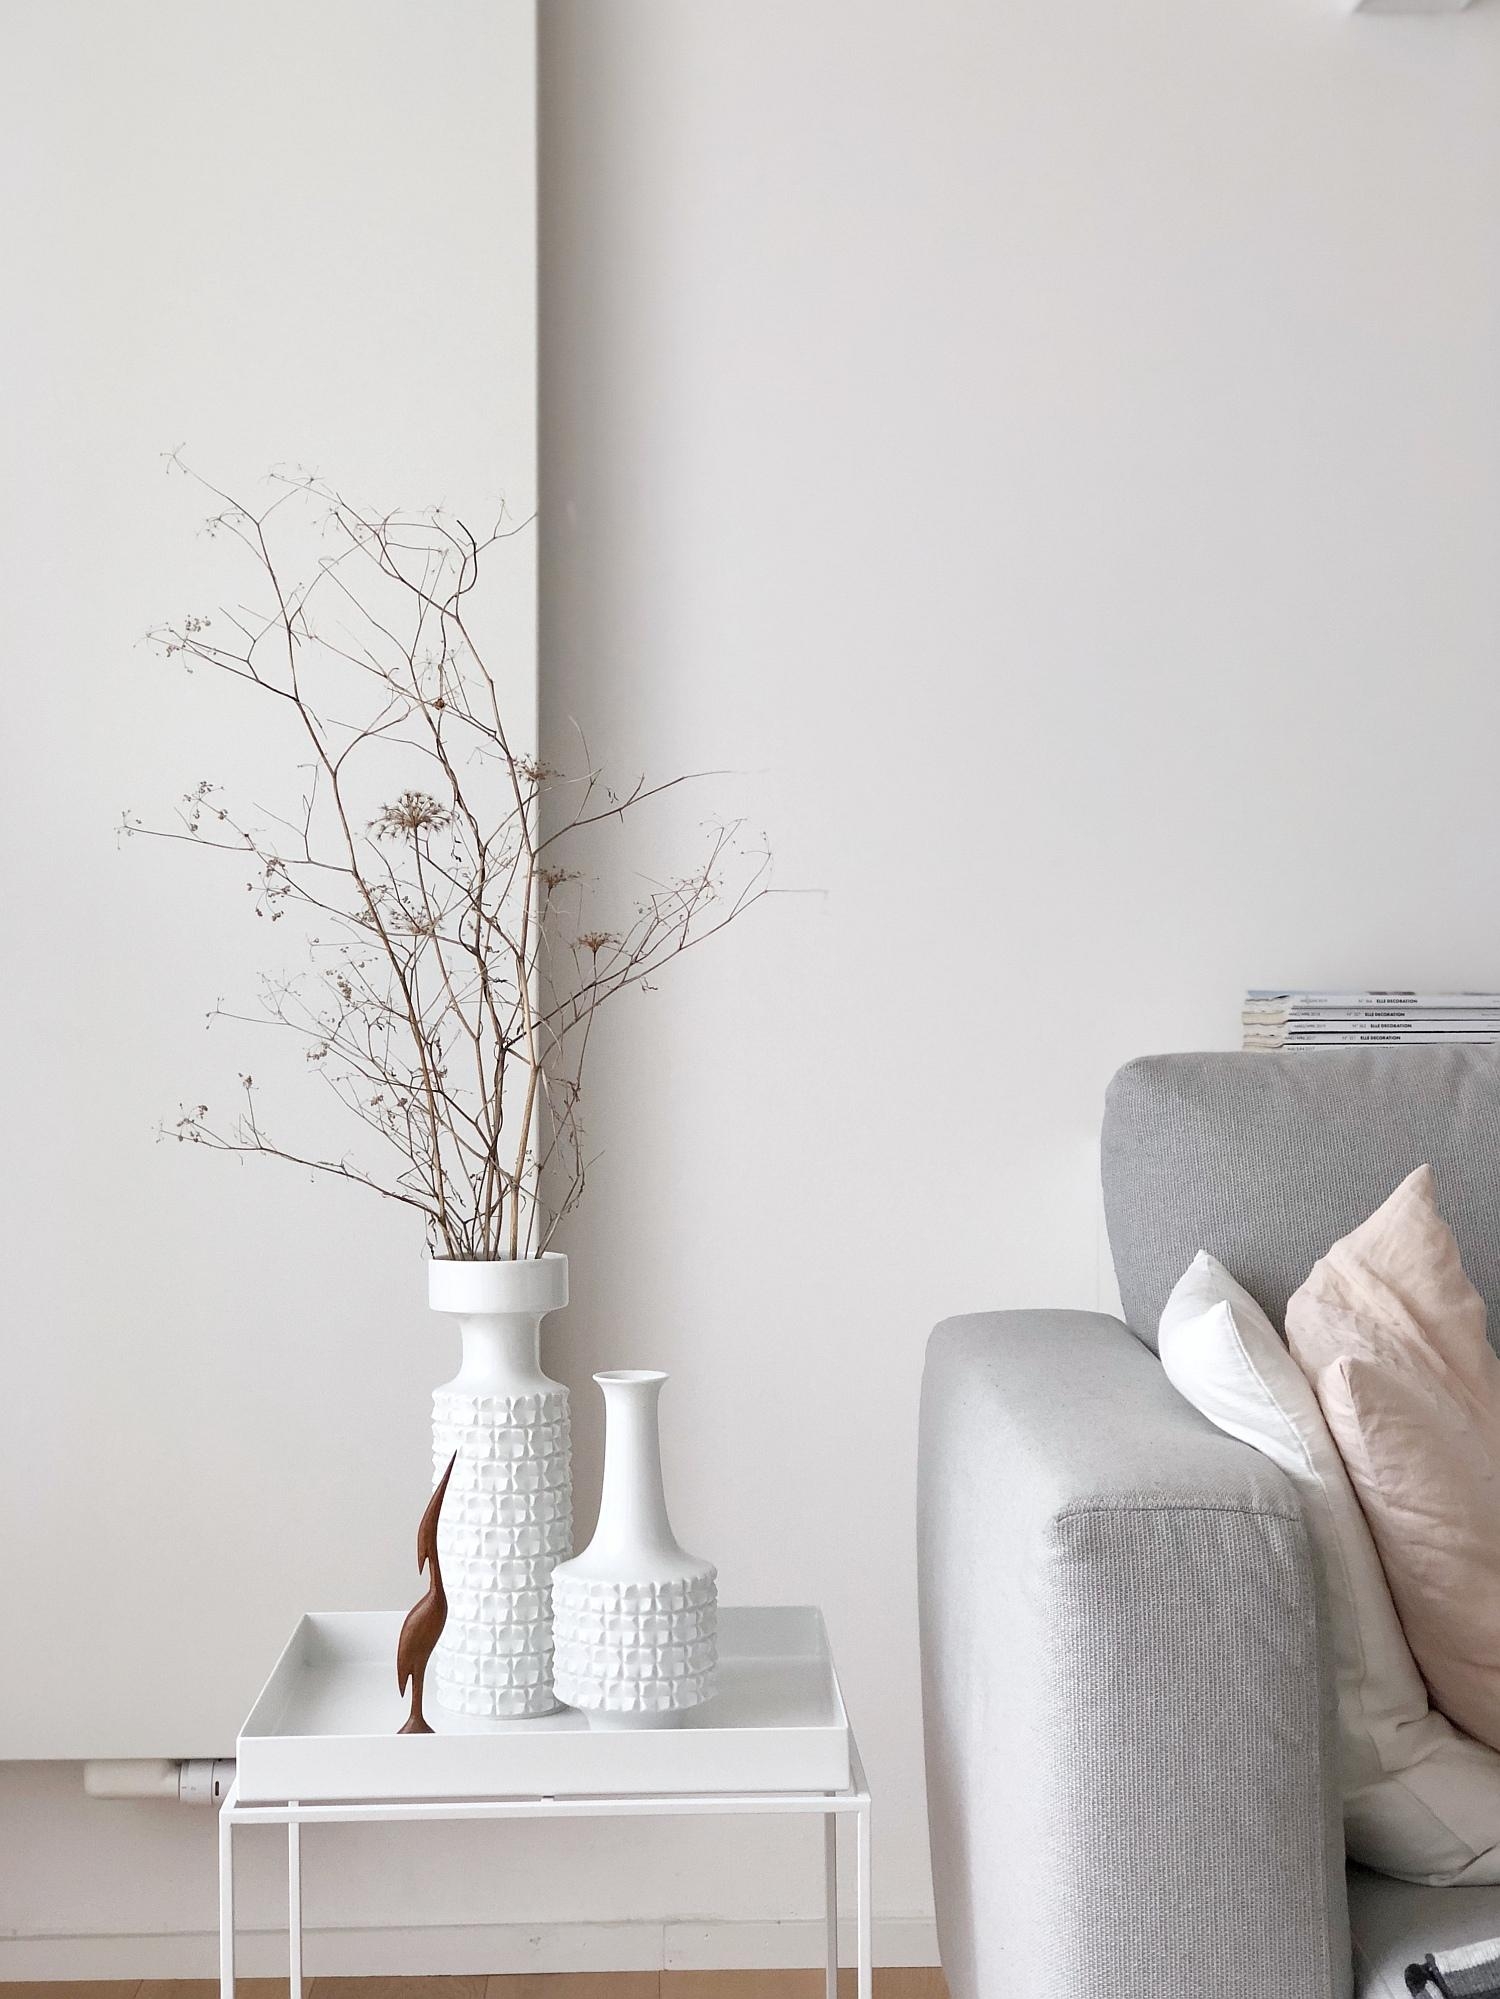 #wohnzimmer #couchstyle #wohneninweiss #porzellan #vintage #minimalistisch